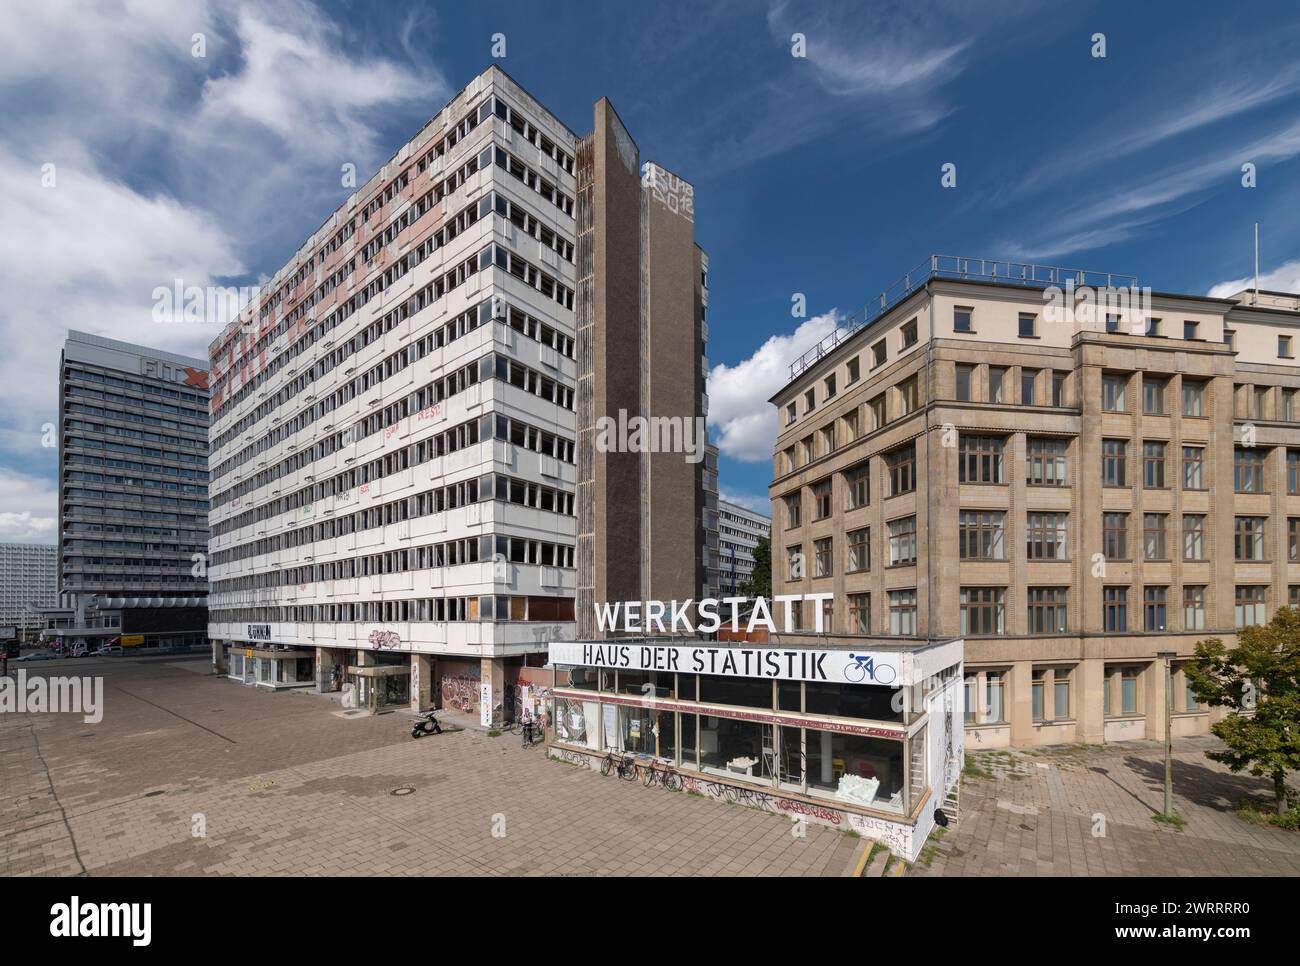 Haus der Statistik, Karl-Marx-Allee, East Berlin, Germany Stock Photo